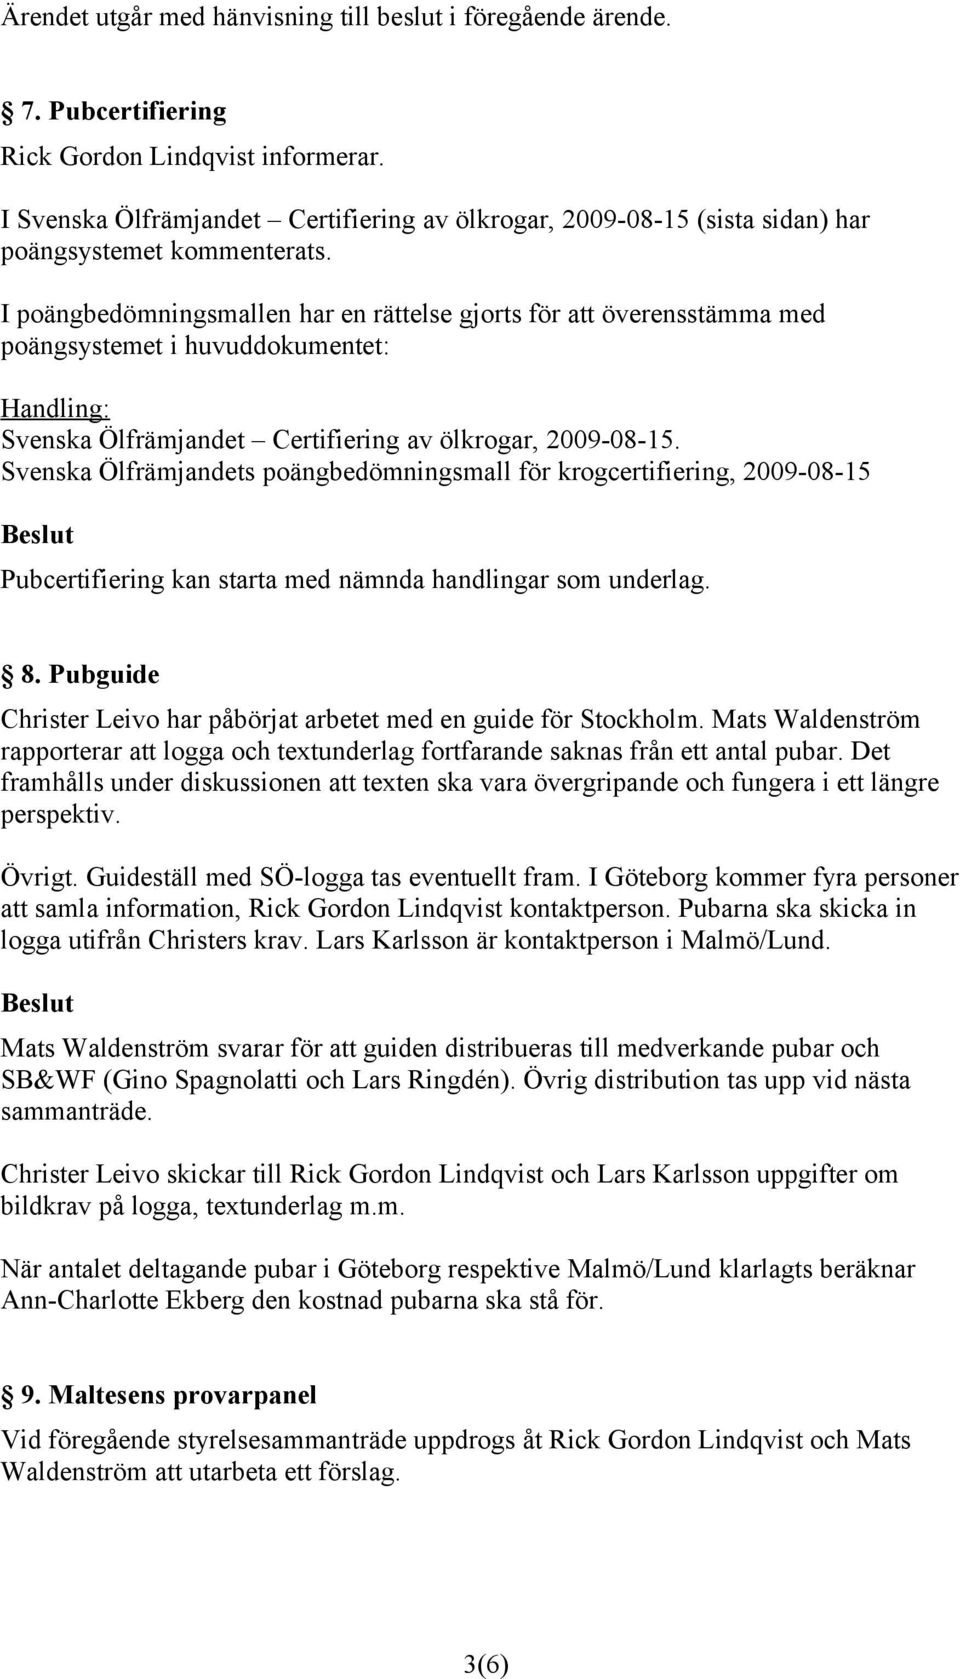 I poängbedömningsmallen har en rättelse gjorts för att överensstämma med poängsystemet i huvuddokumentet: Handling: Svenska Ölfrämjandet Certifiering av ölkrogar, 2009-08-15.